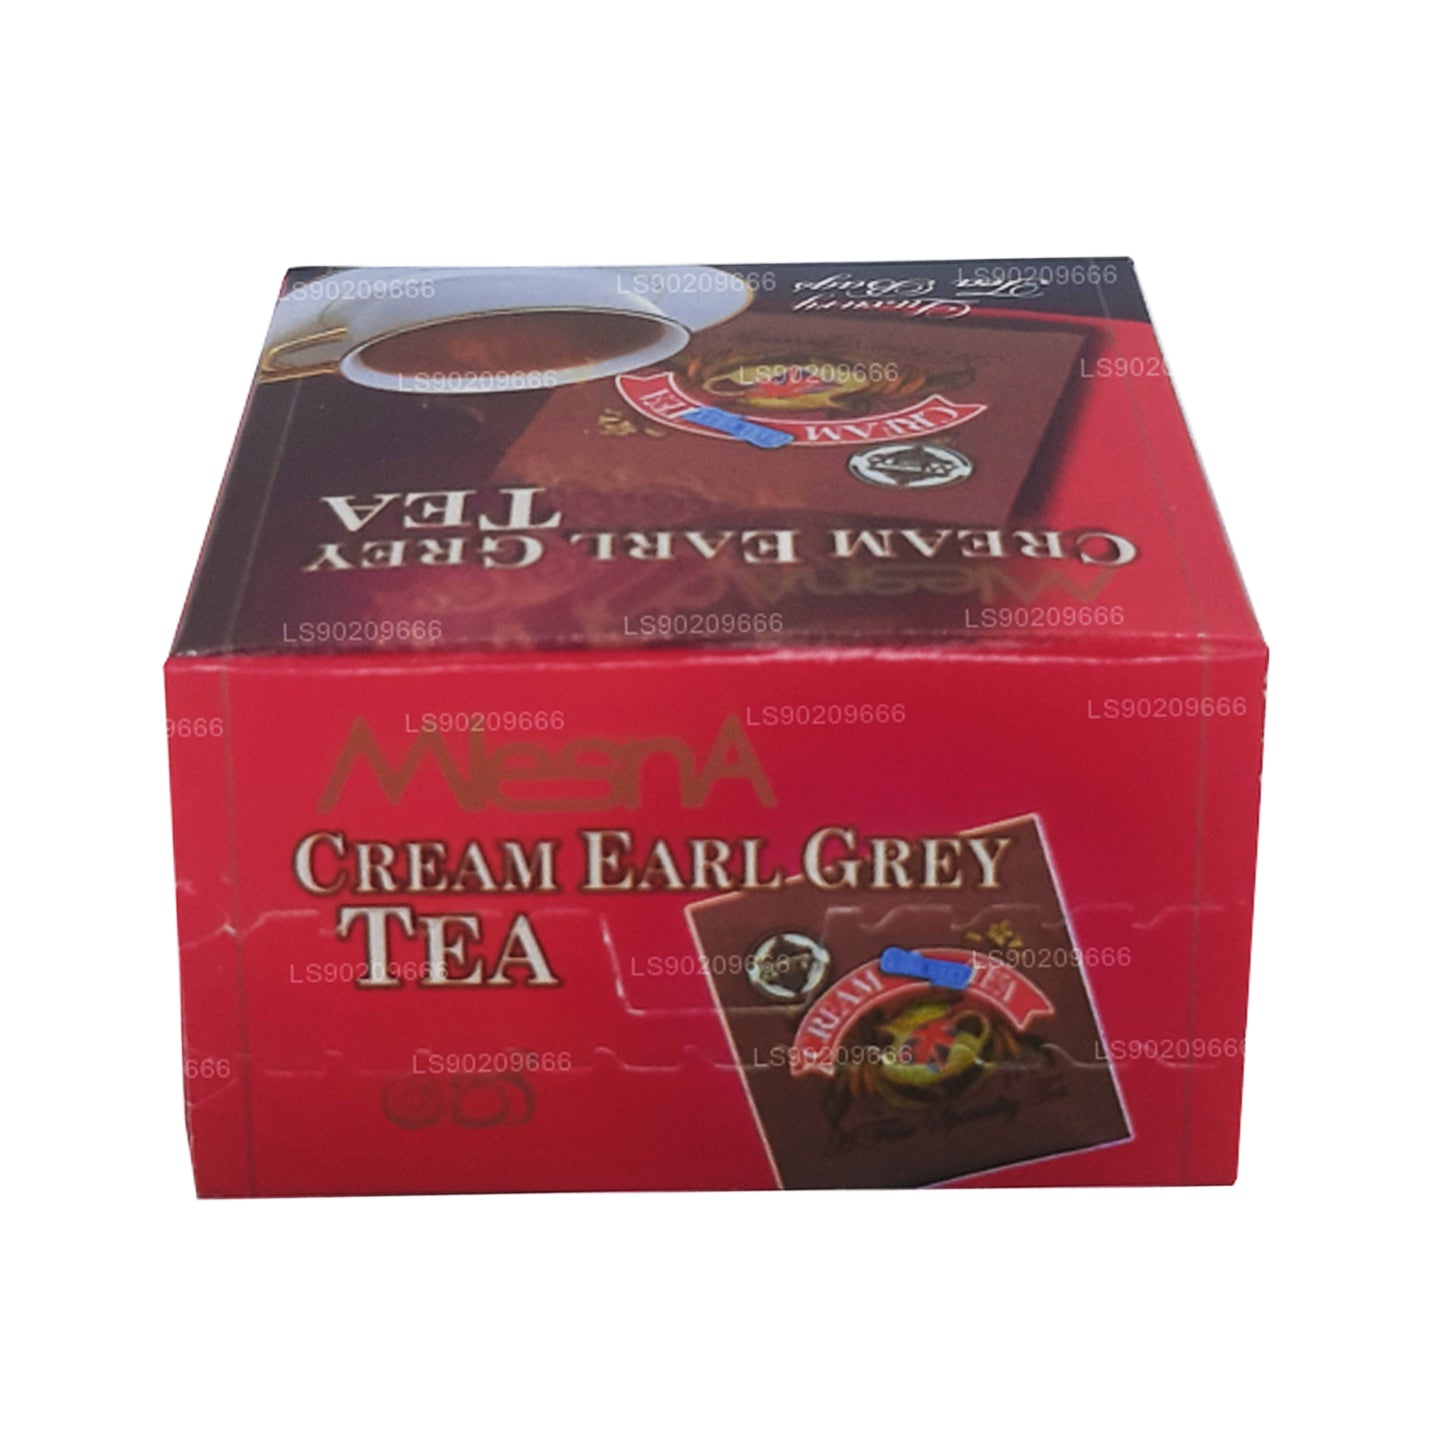 Té Mlesna Cream Earl Grey (20 g), 10 bolsitas de té de lujo